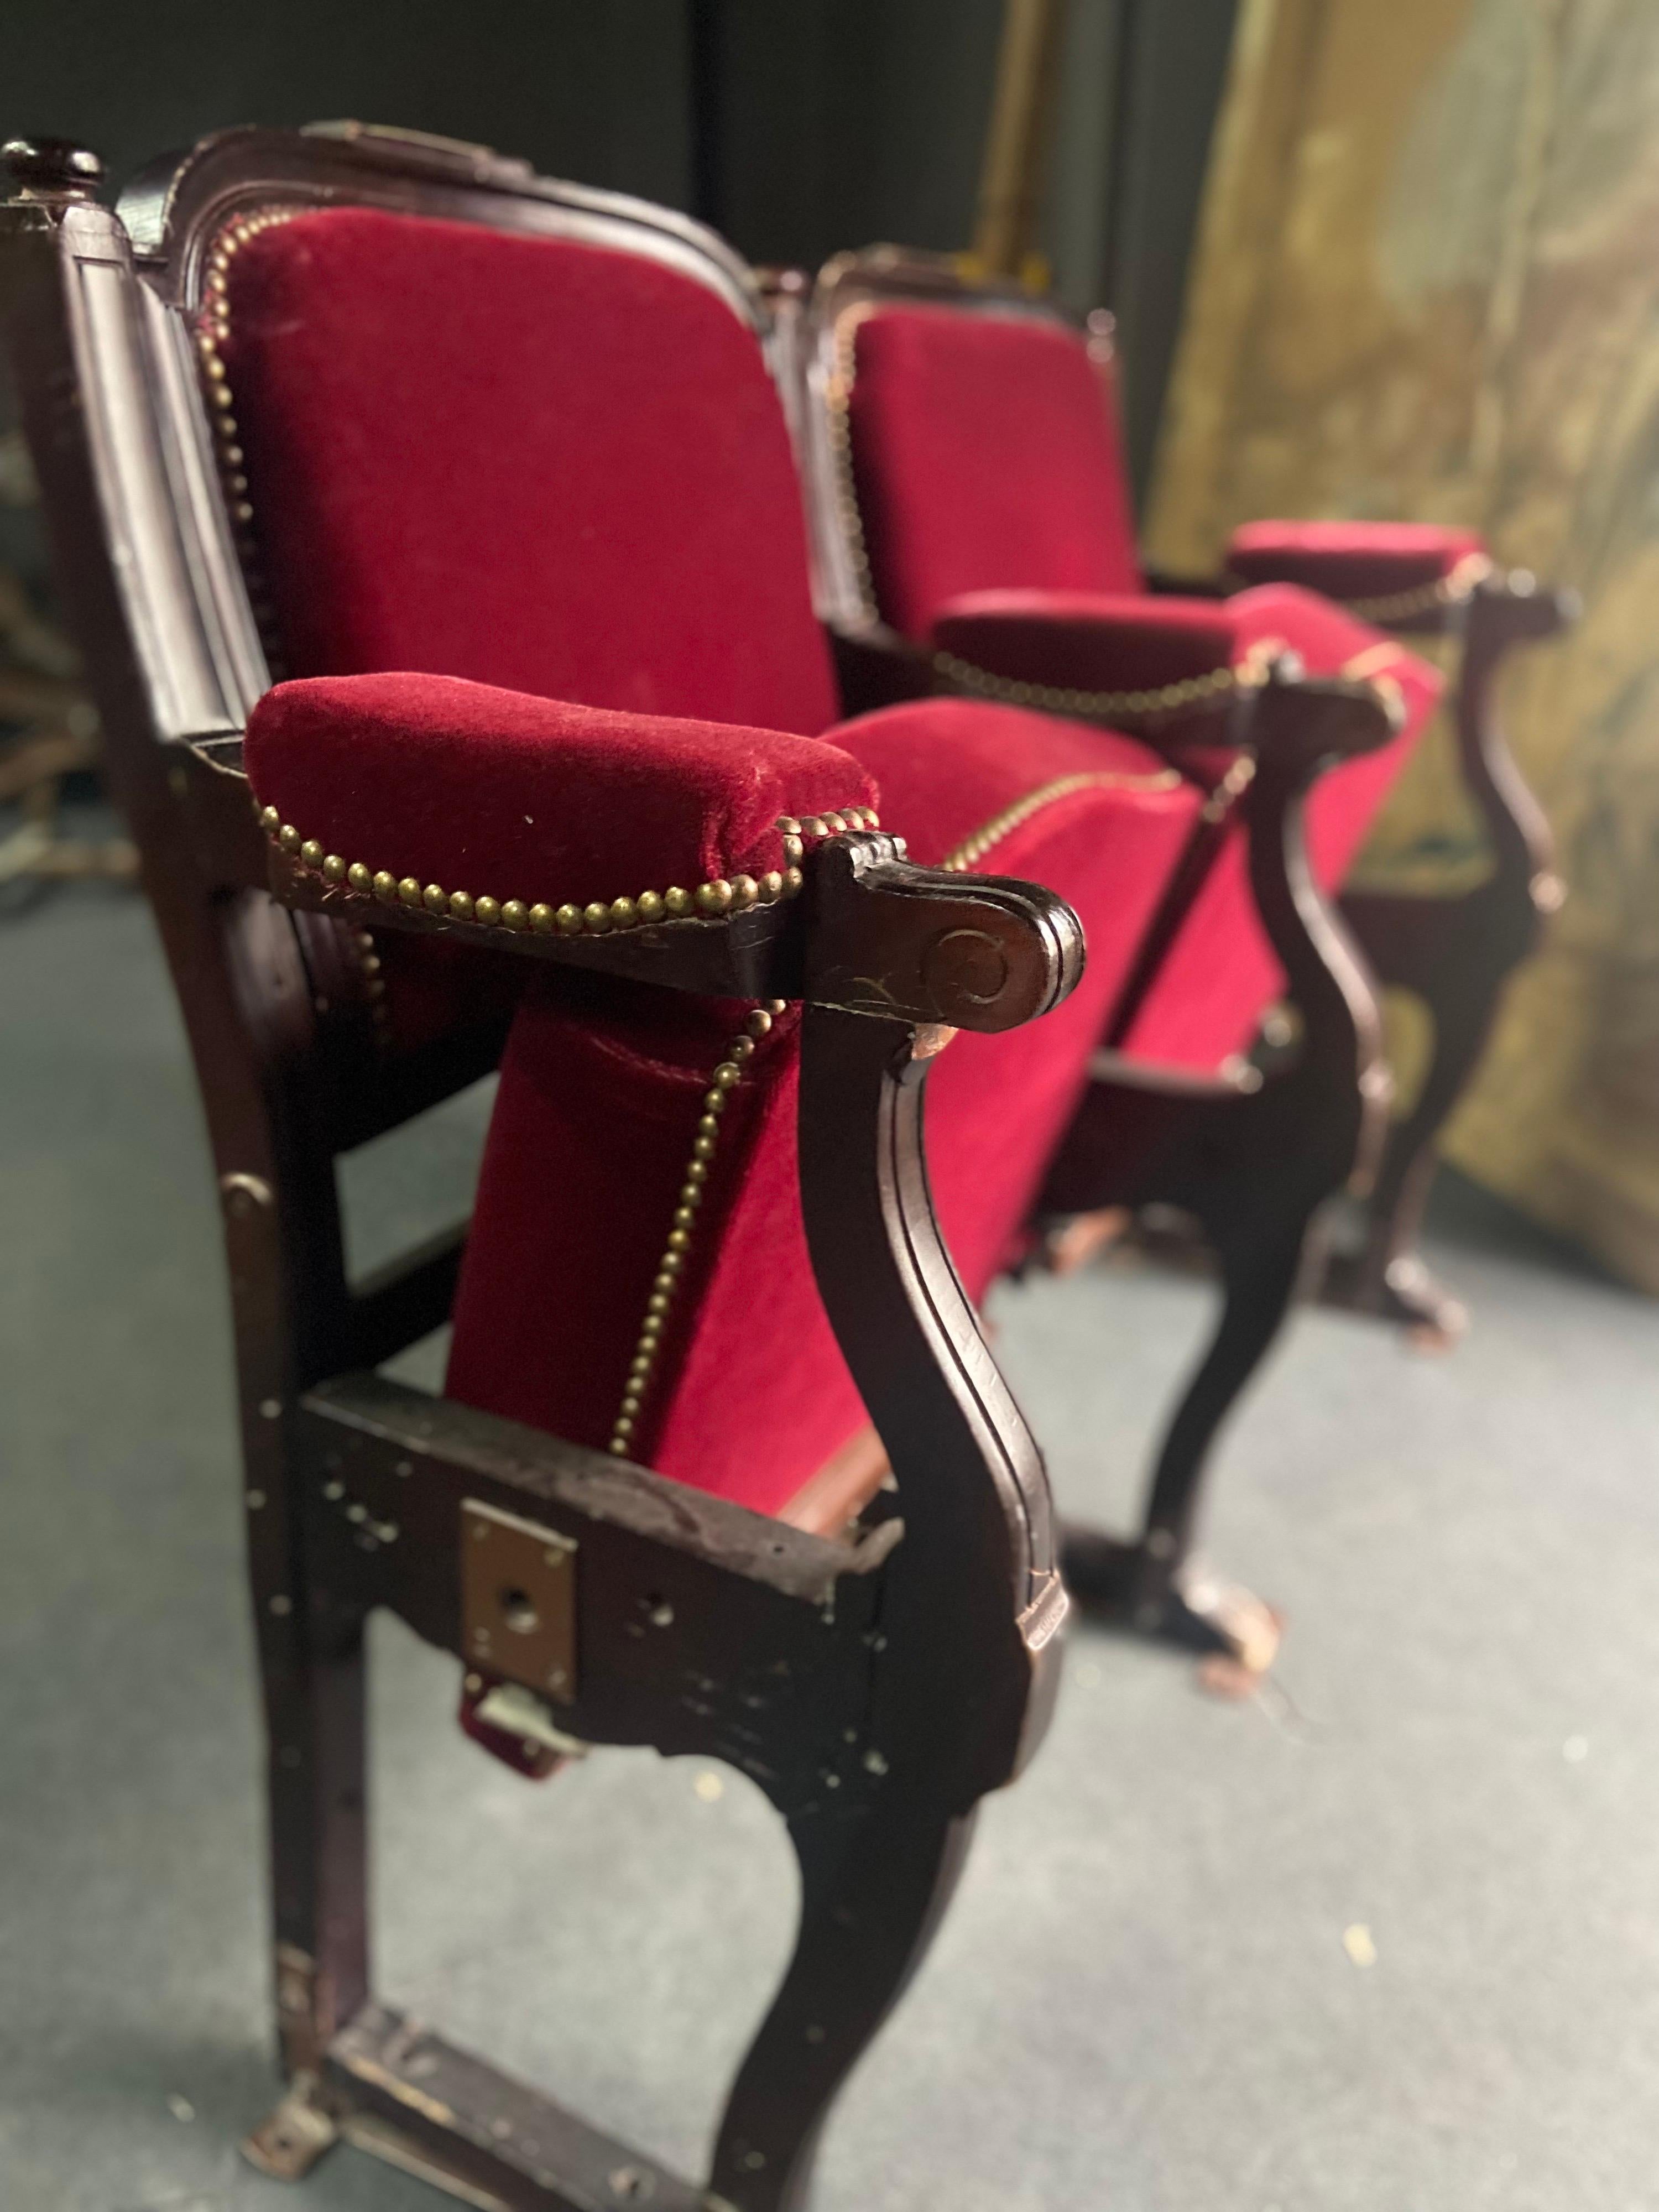 Sièges de théâtre à deux places en bois et métal avec sièges inclinables, recouverts de velours rouge. Mesures : Largeur 116 cm
France, vers 1920.